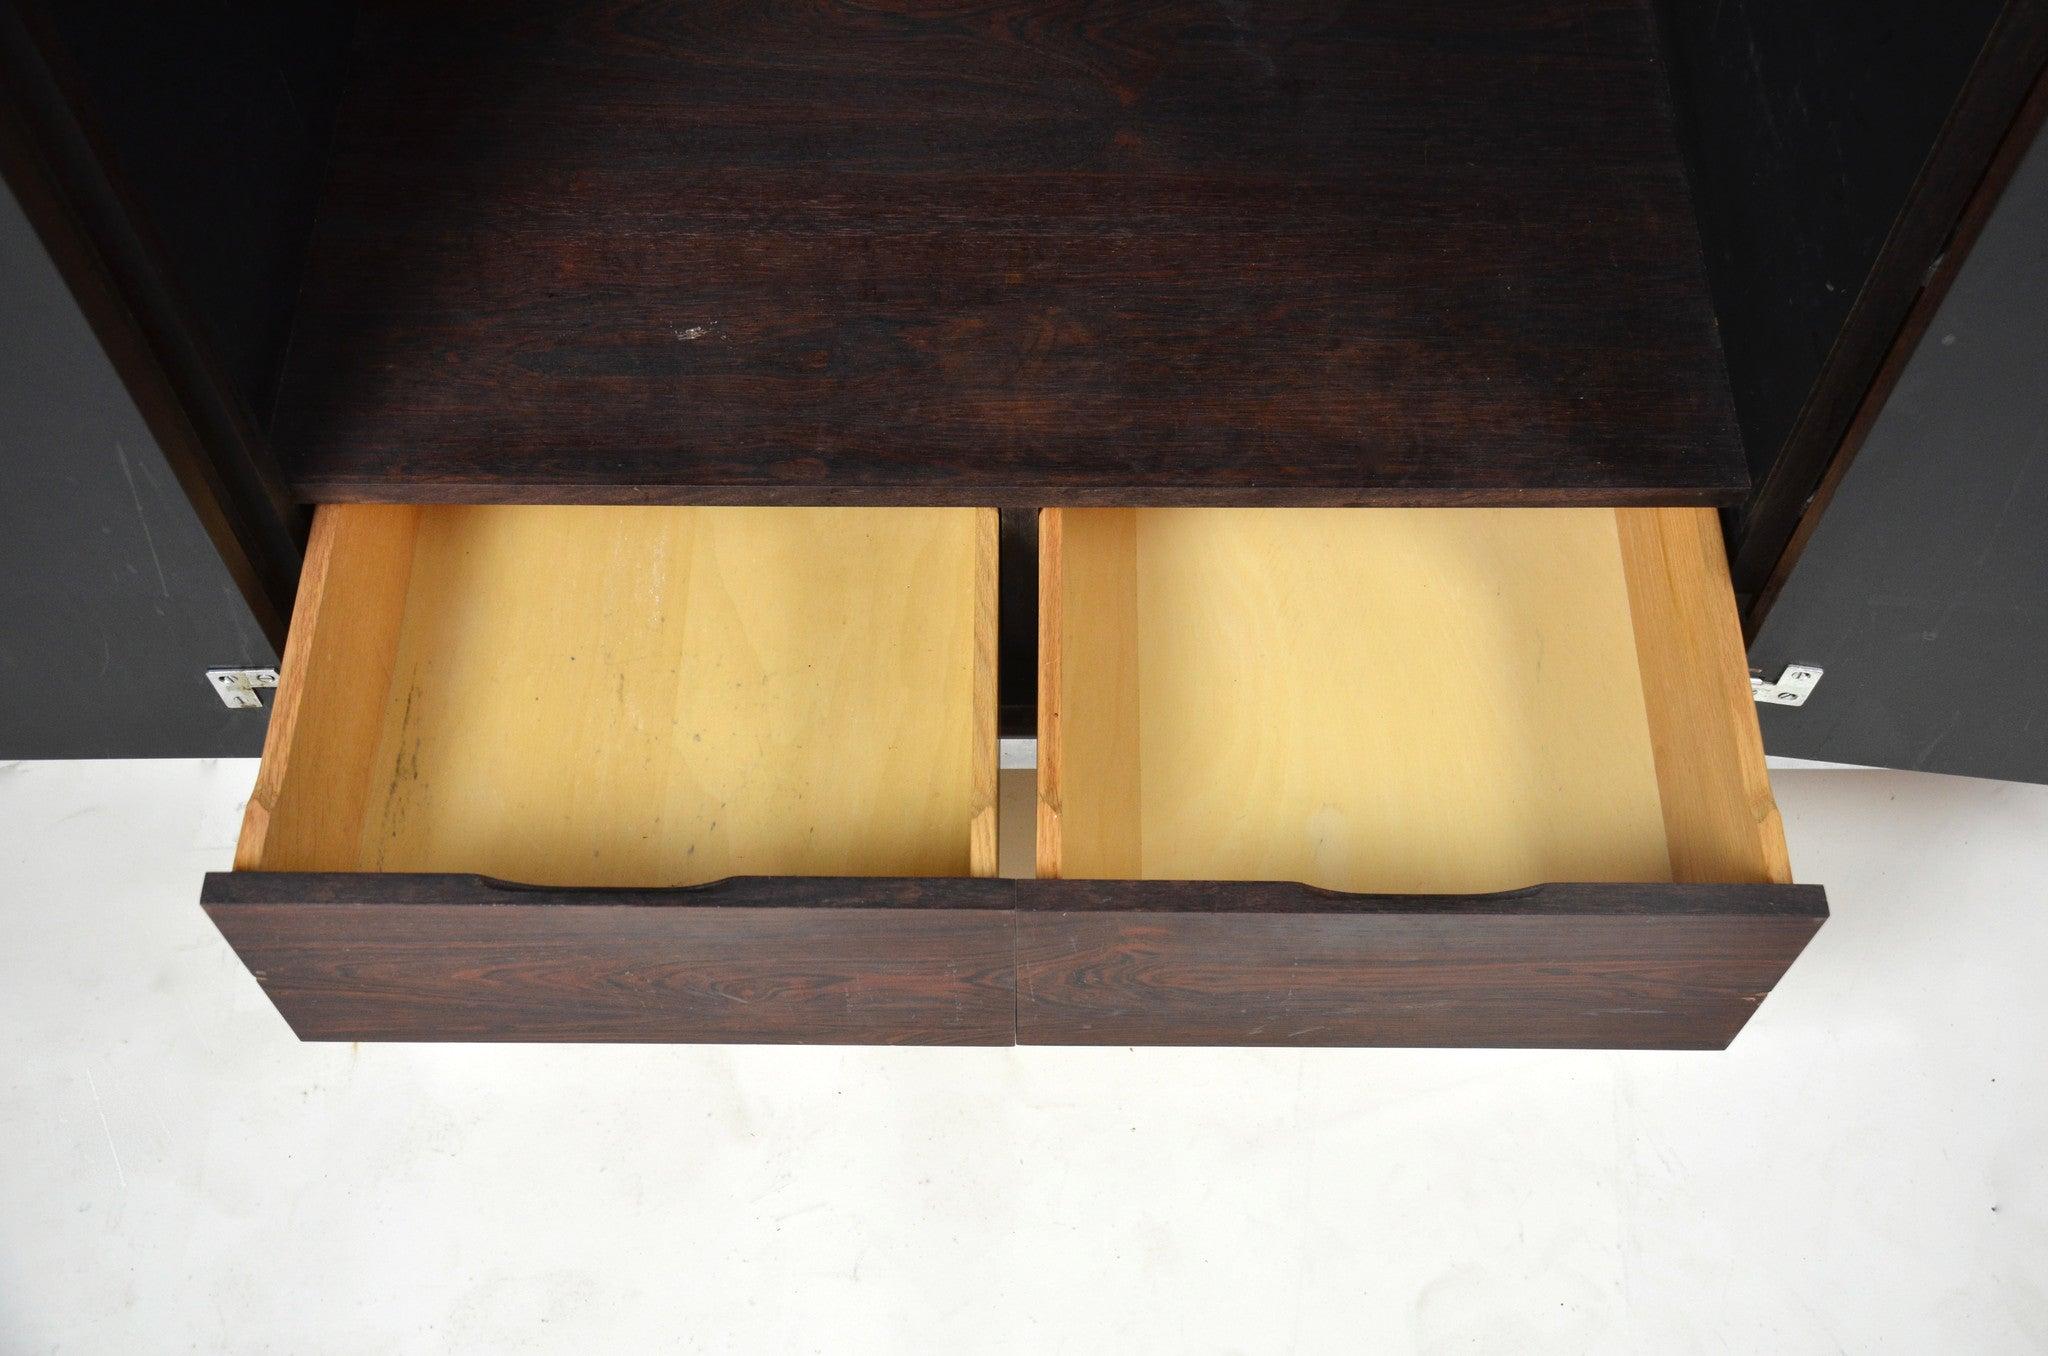 Up&Up est un rare meuble à bords fins en bois de rose George Nelson pour Herman Miller. Le meuble semble avoir été conçu à l'origine pour abriter des bouteilles et servir de buffet. Il semble qu'il puisse également être utilisé à d'autres fins. Quoi